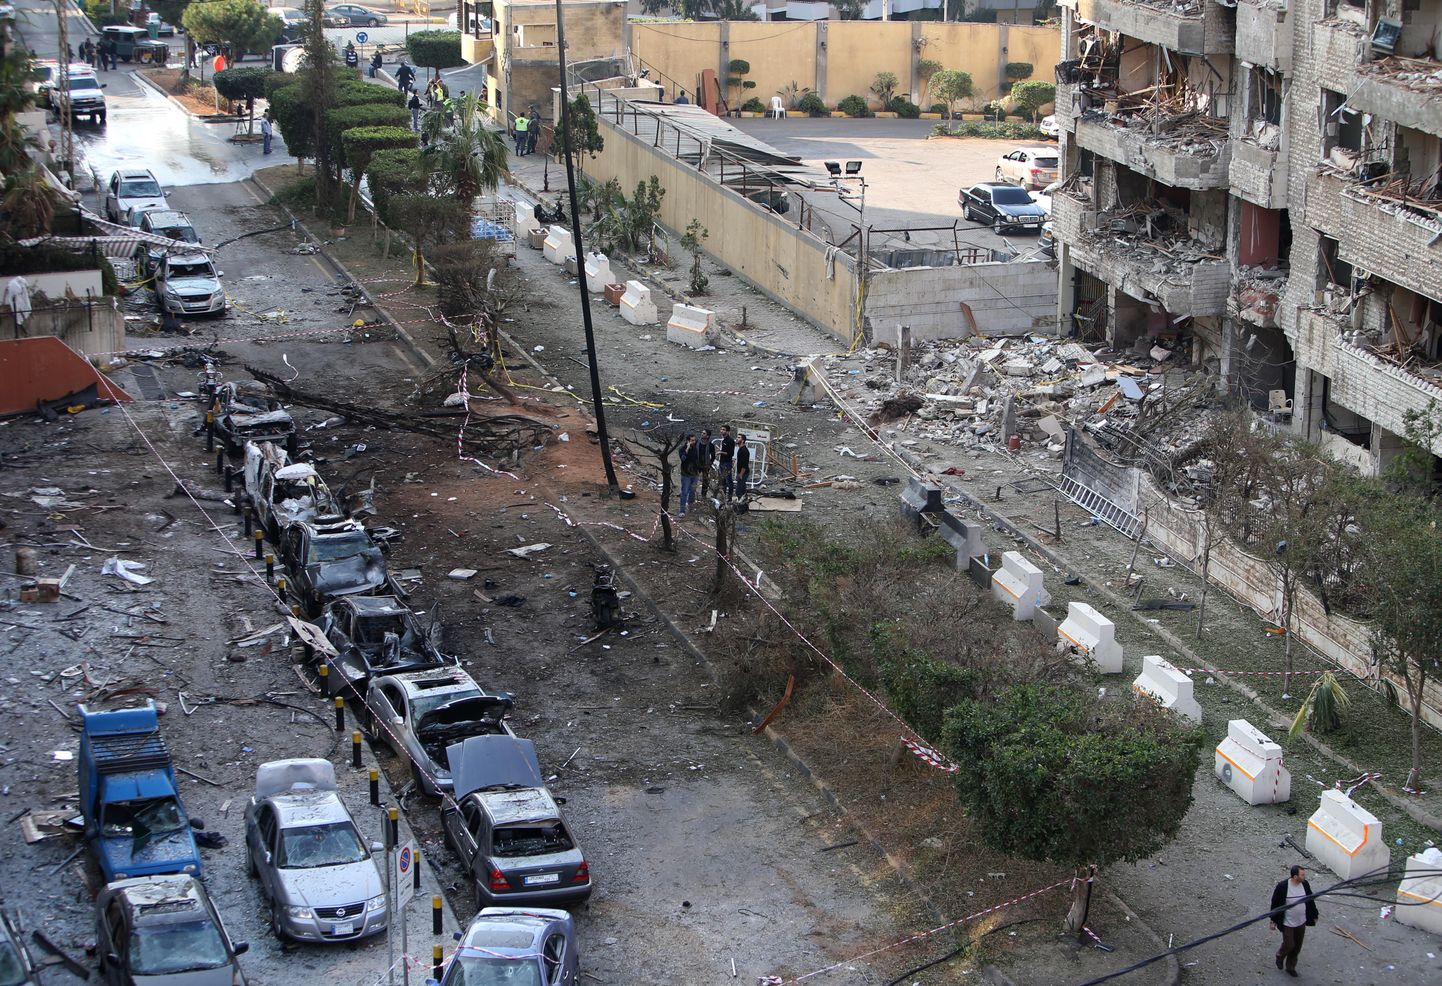 Beirutis Iraani saatkonna lähistel plahvatas 20. novembril kaks pommi. Foto on tehtud varsti pärast plahvatusi.